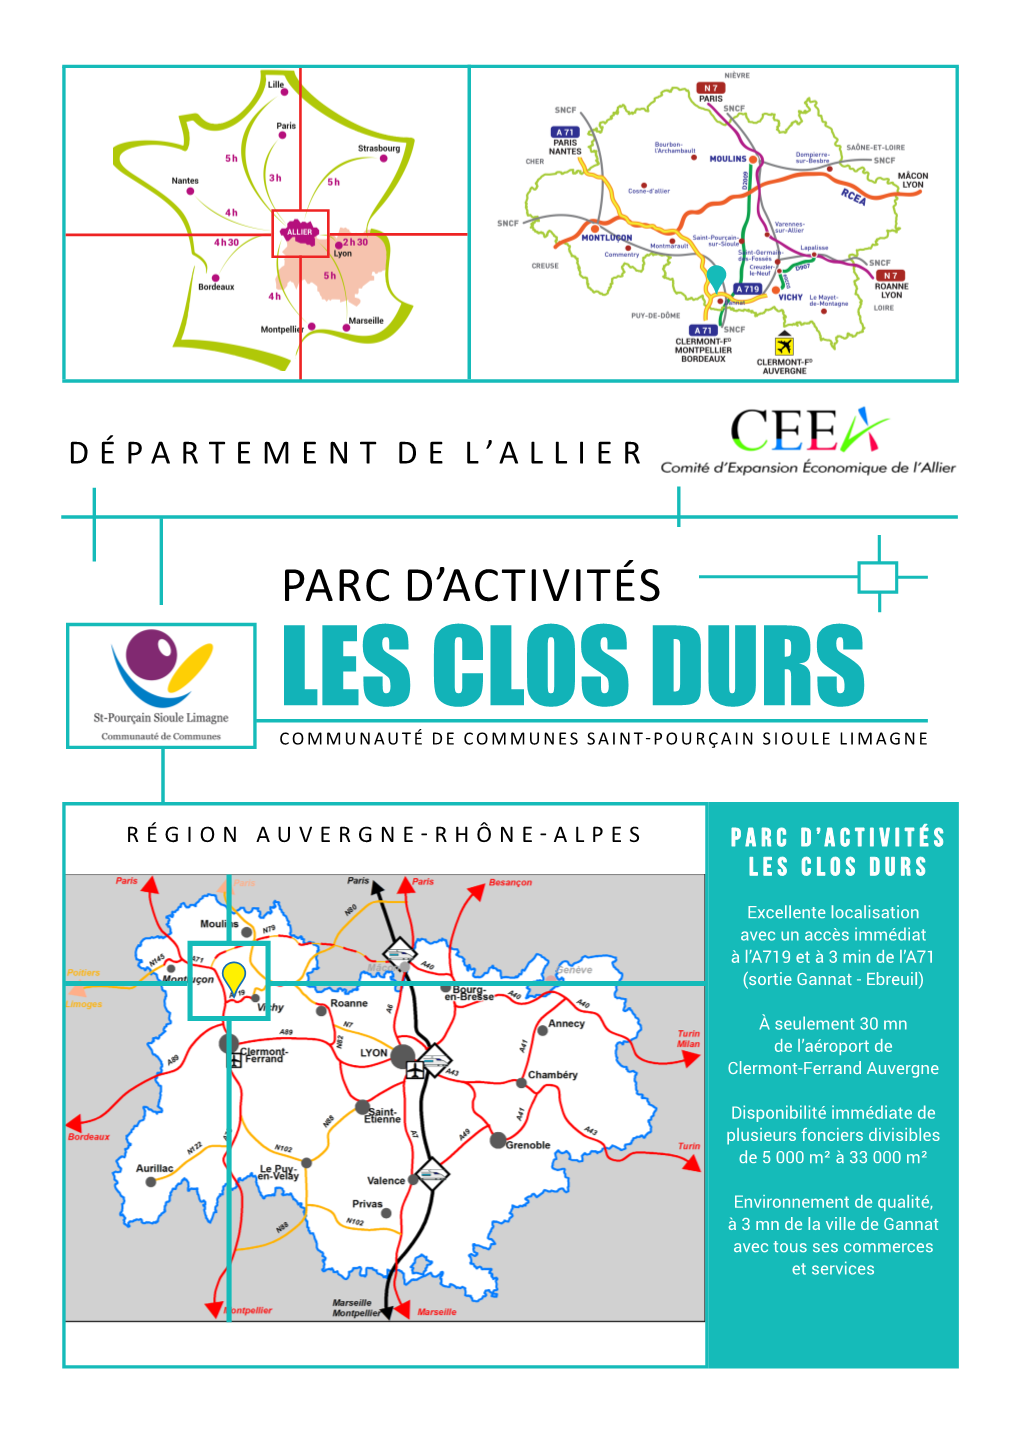 Les Clos Durs Communauté De Communes Saint-Pourçain Sioule Limagne